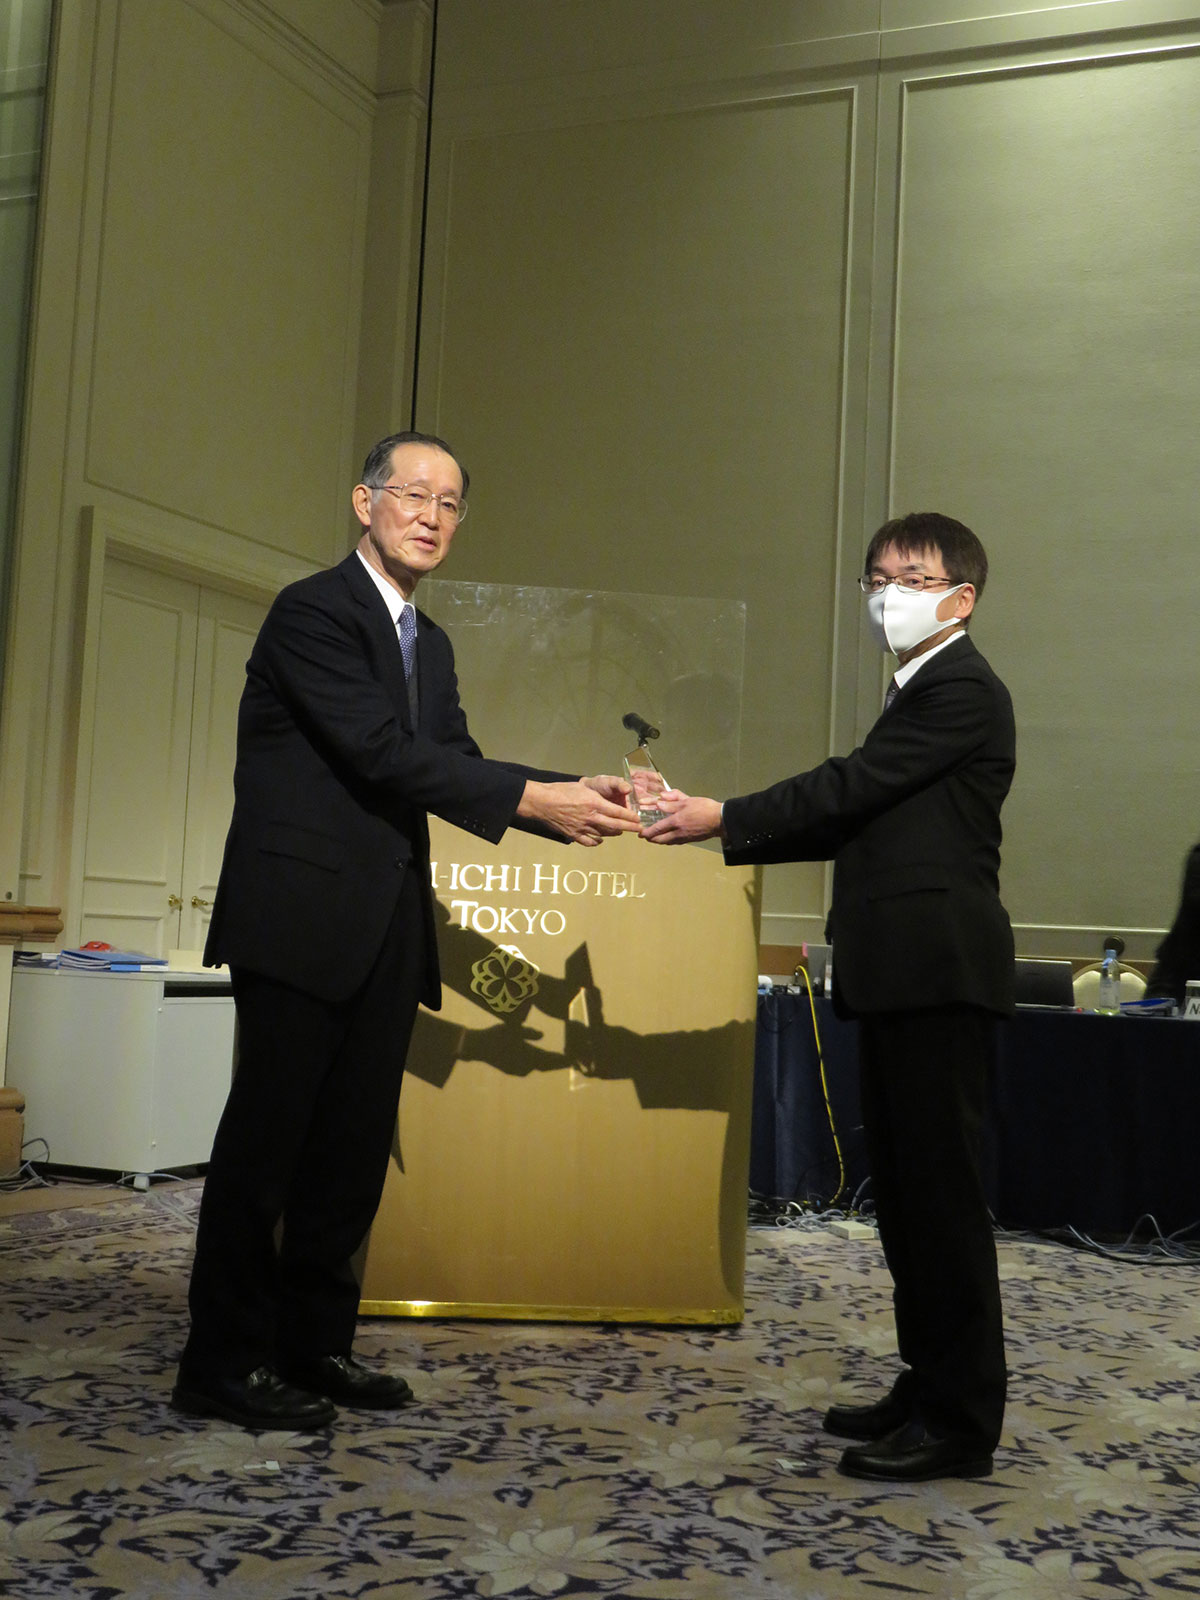 Photo of the Award Ceremony